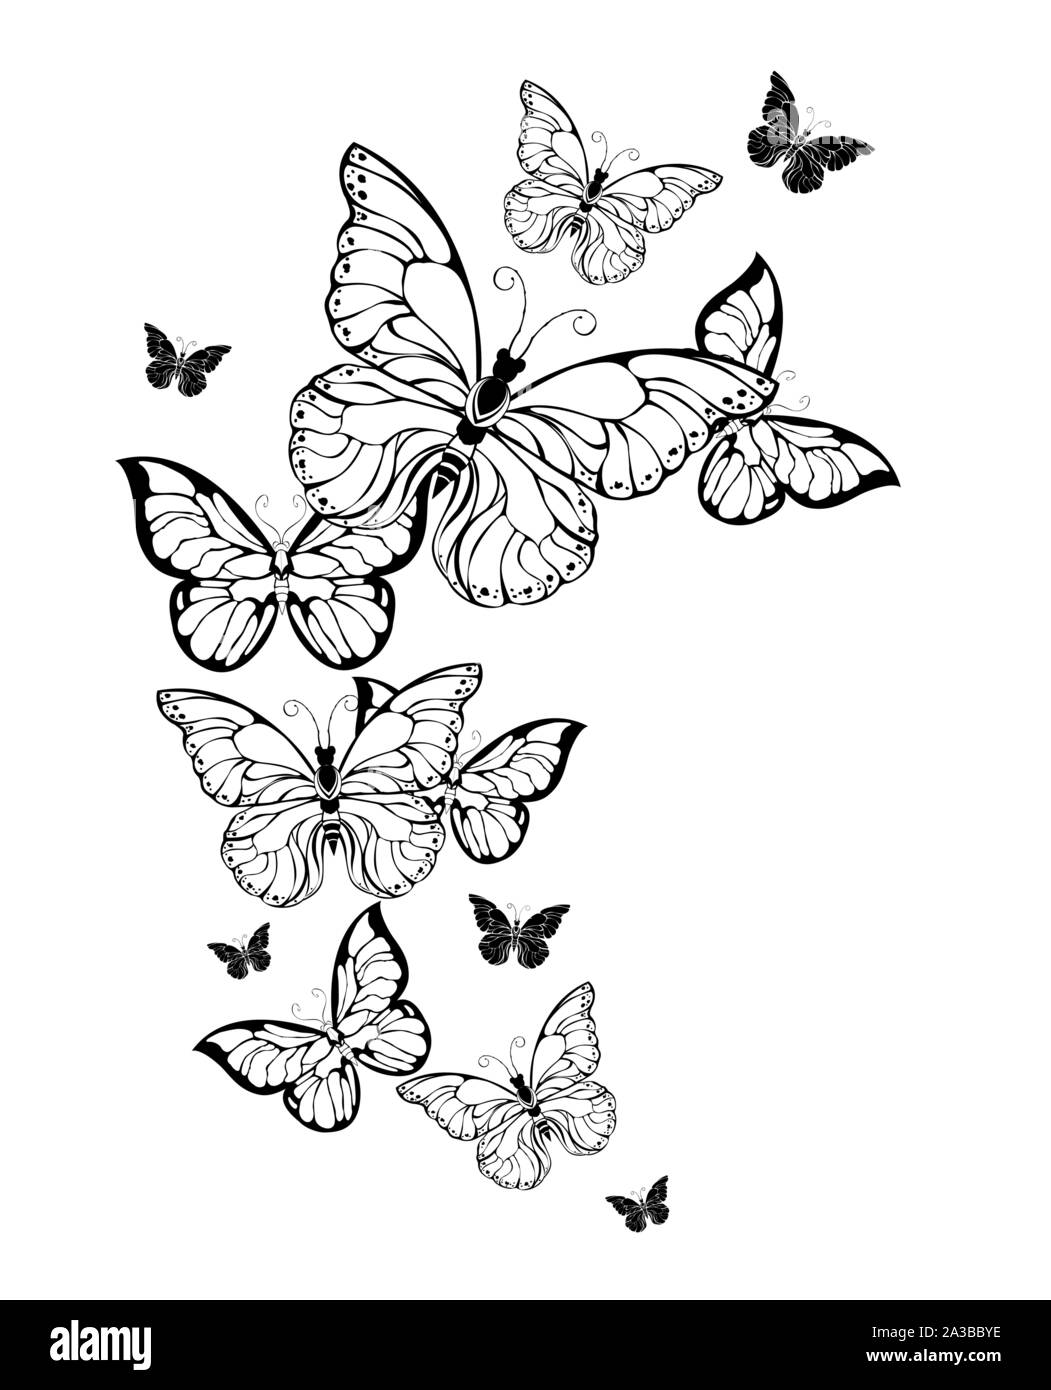 Voler des troupeaux de contour, papillons artistiques sur fond blanc. Style de tatouage. Illustration de Vecteur